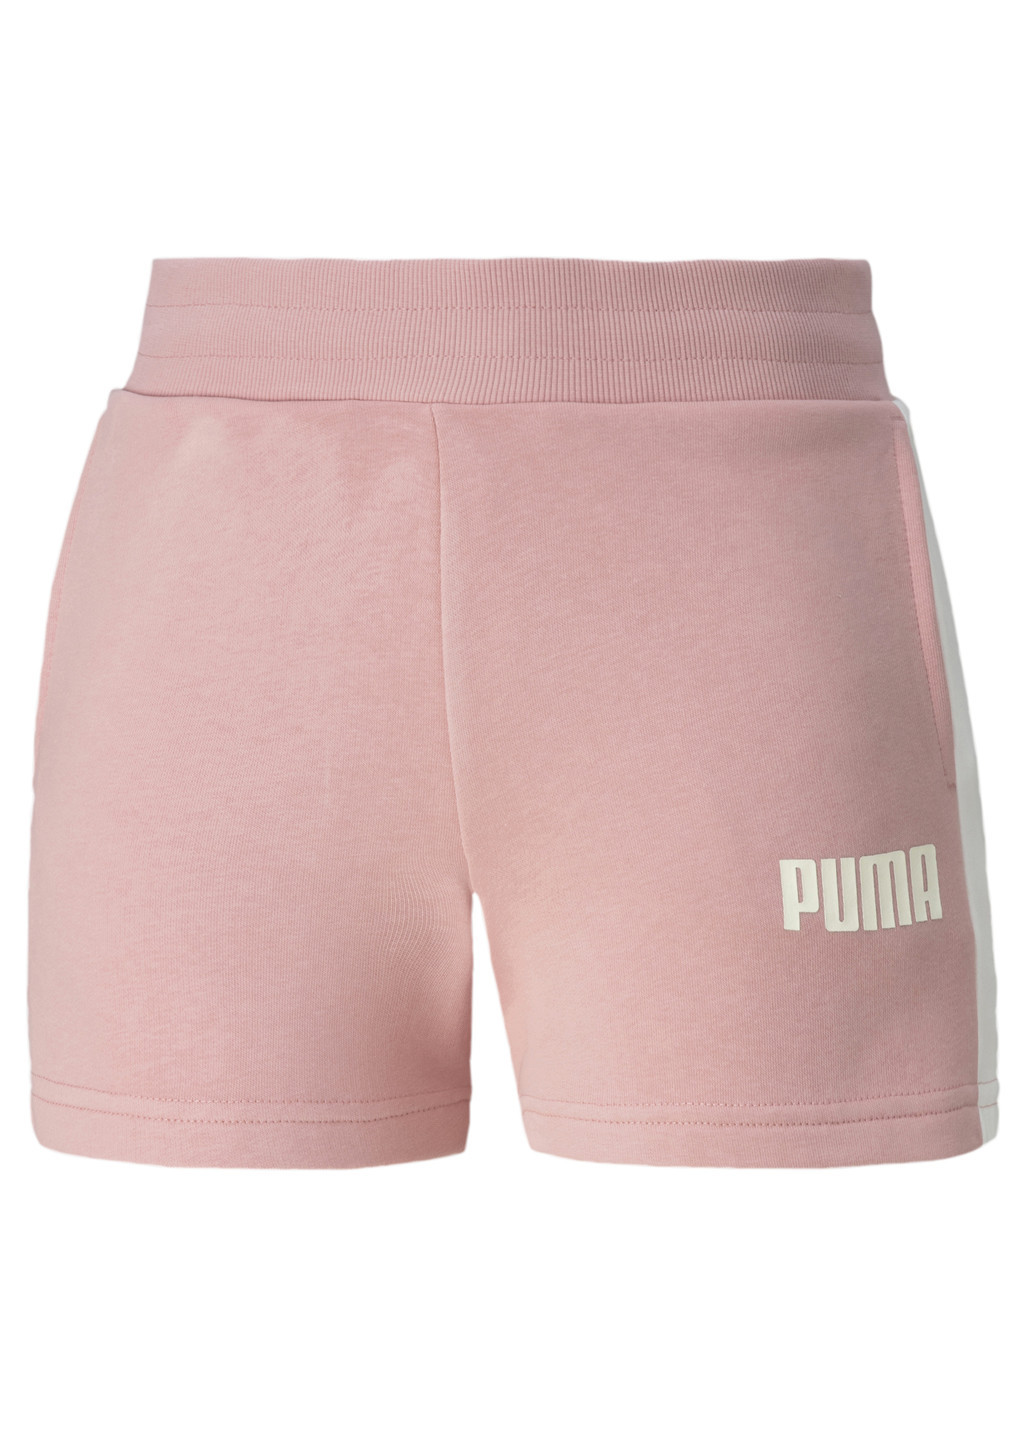 Шорти Puma однотонные розовые спортивные хлопок, полиэстер, эластан